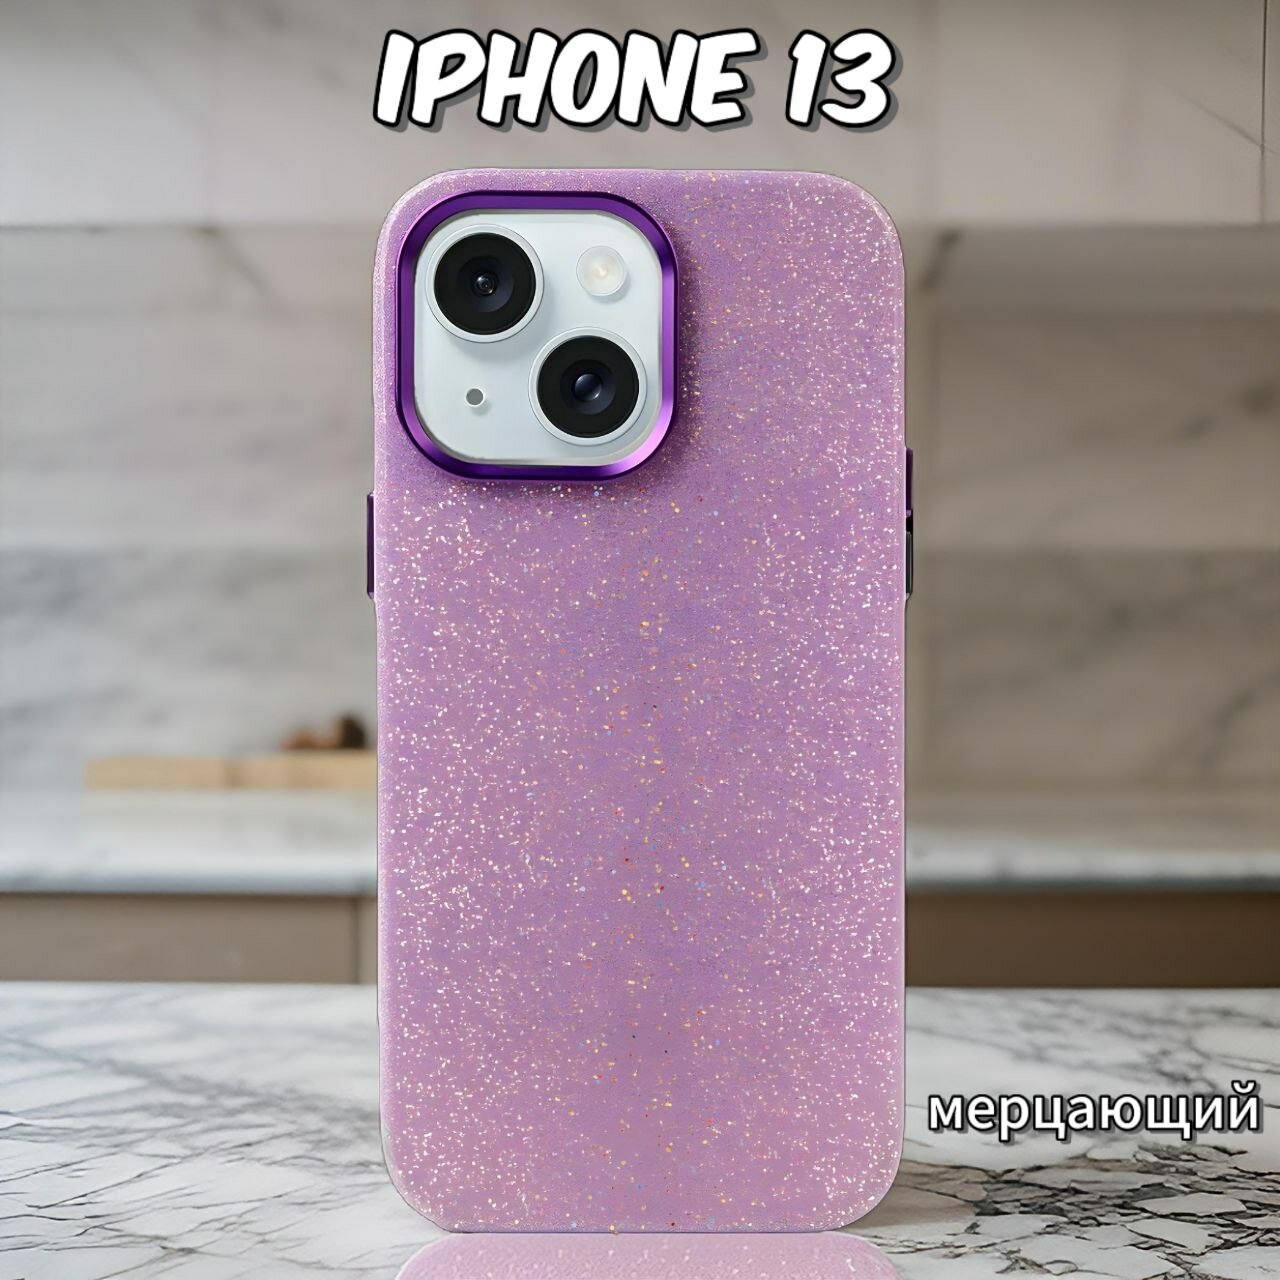 Чехол для iPhone 13 блестящий на Айфон 13 защита камеры и экрана силиконовый цвет сиреневый